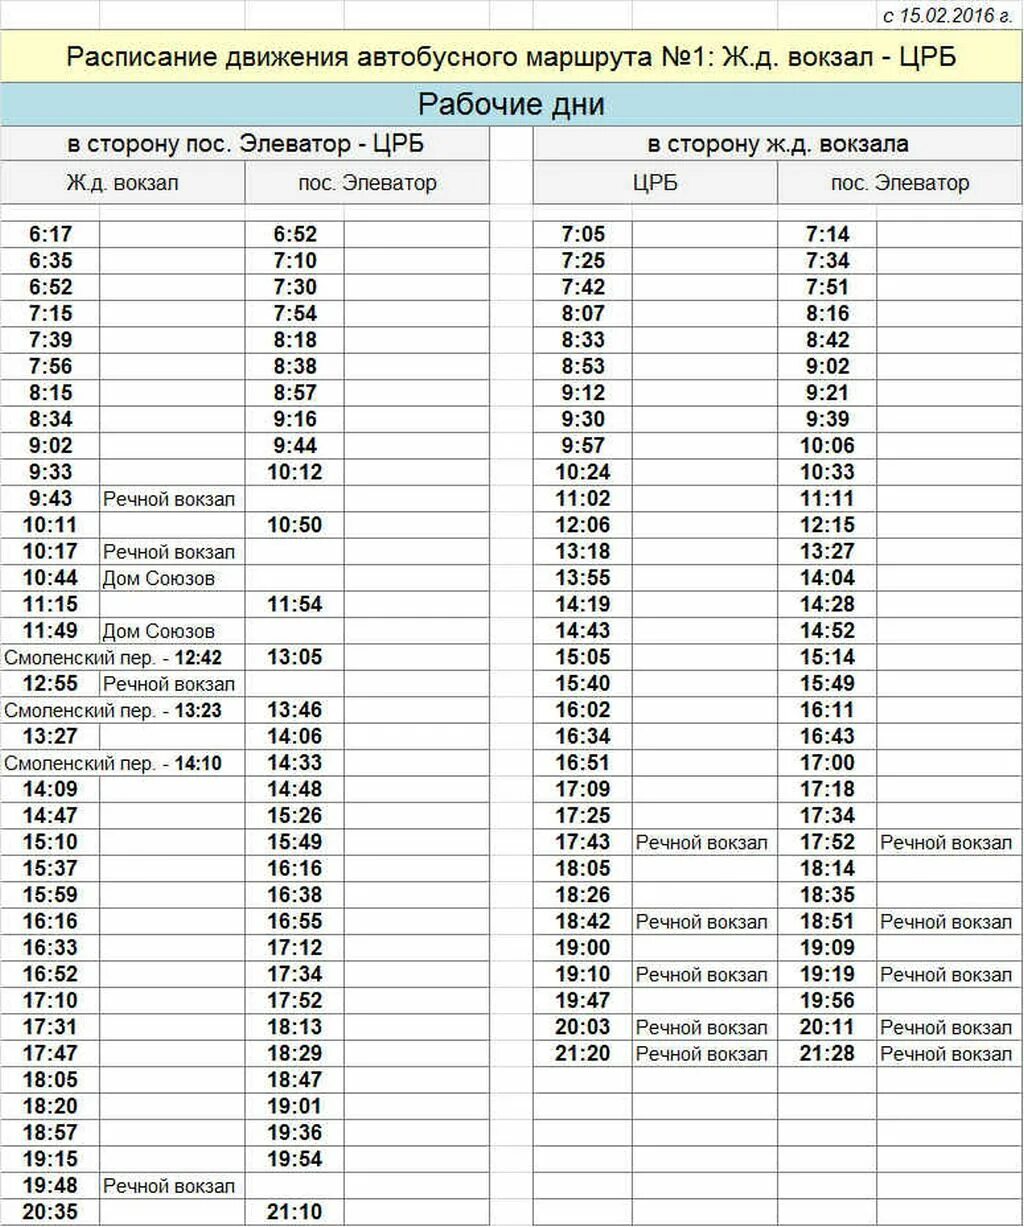 Новое расписание автобусов маршрута 1